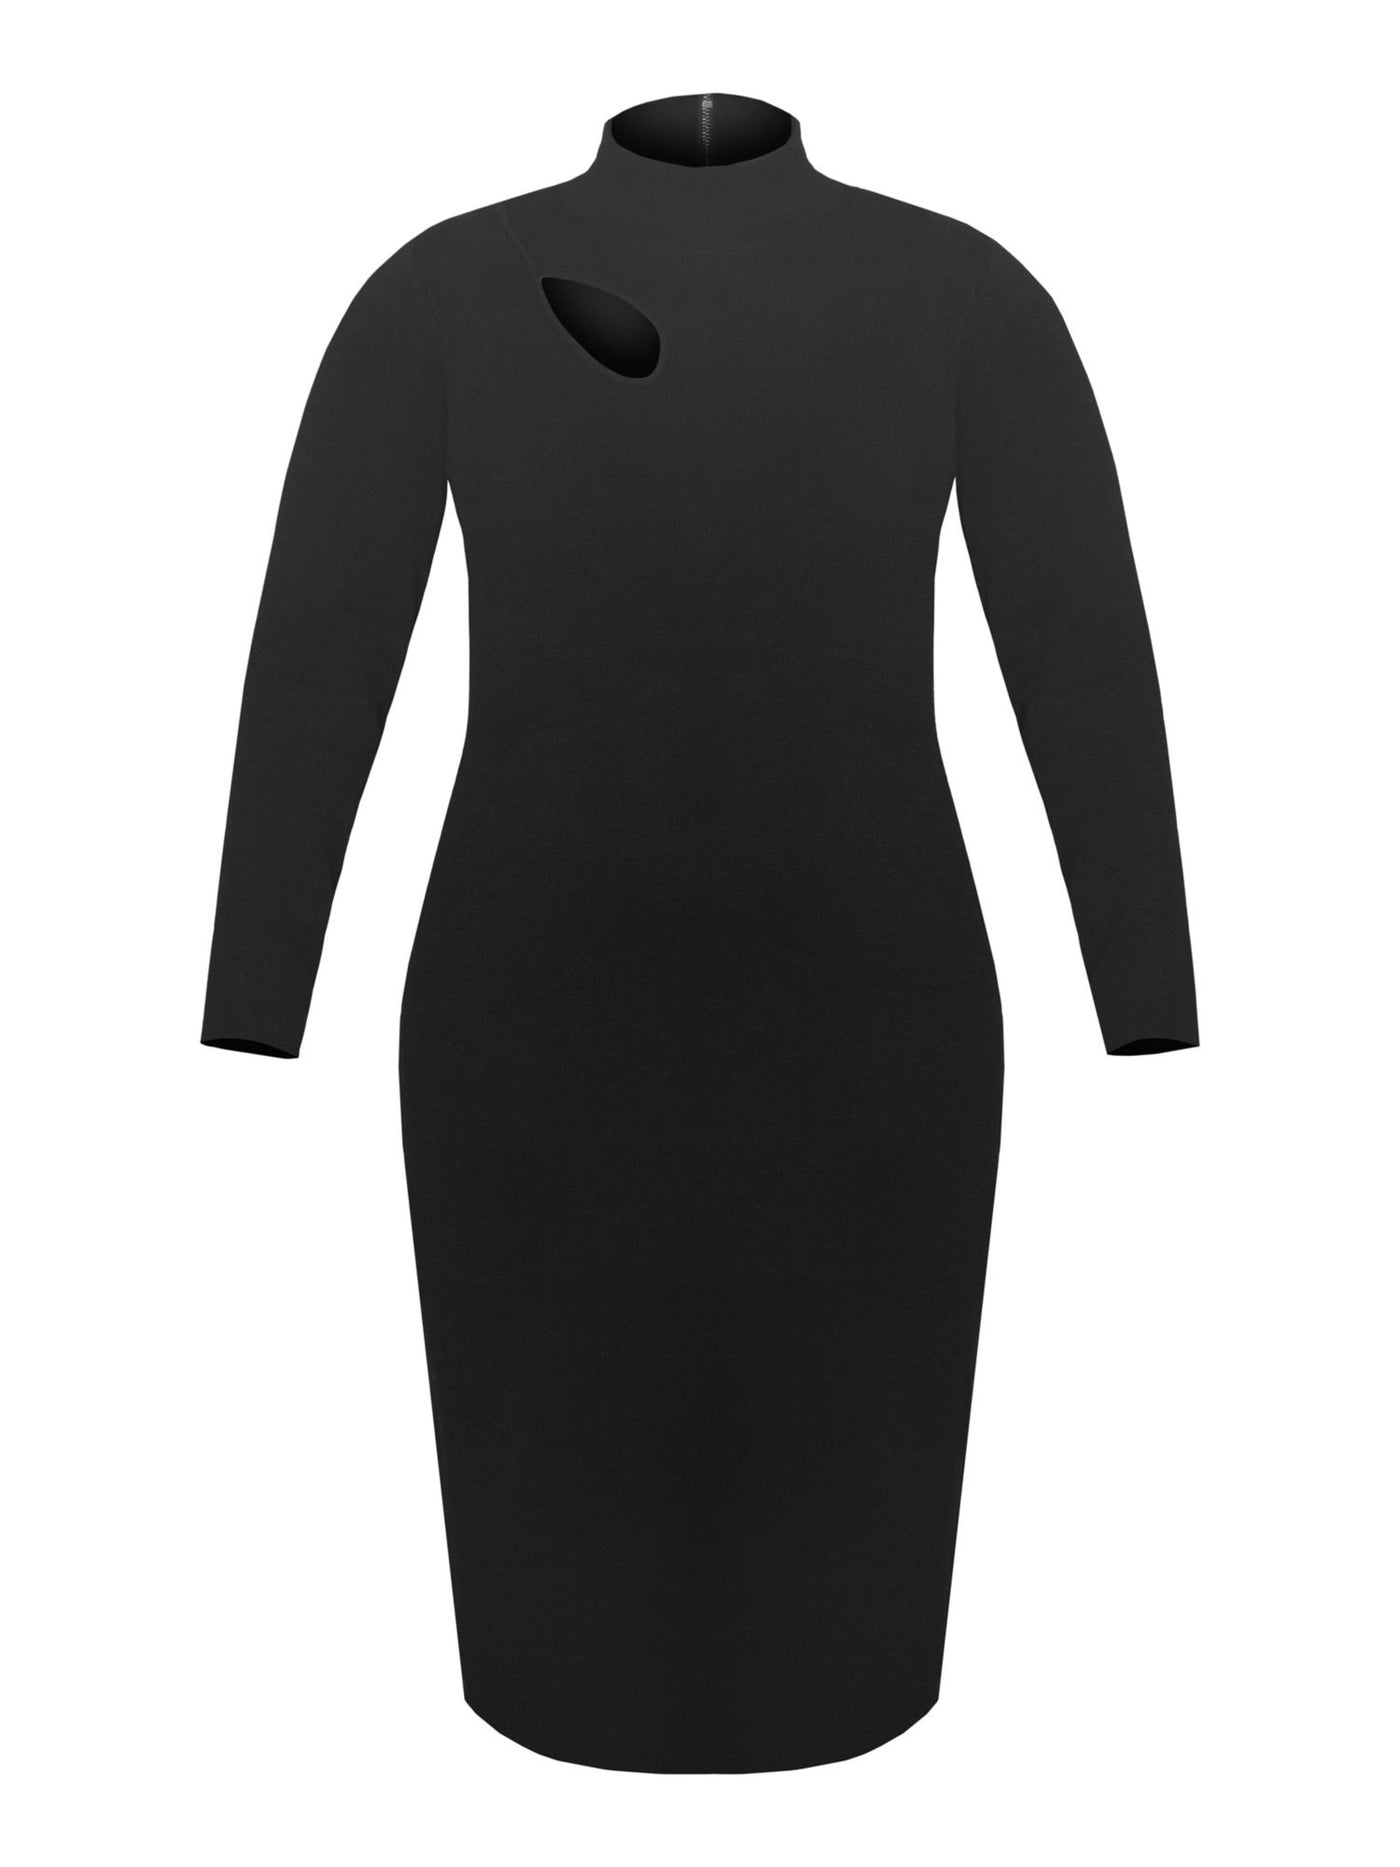 RACHEL RACHEL ROY Womens Black Stretch Cut Out Zippered Unlined Long Sleeve Mock Neck Midi Wear To Work Sweater Dress Plus 0X